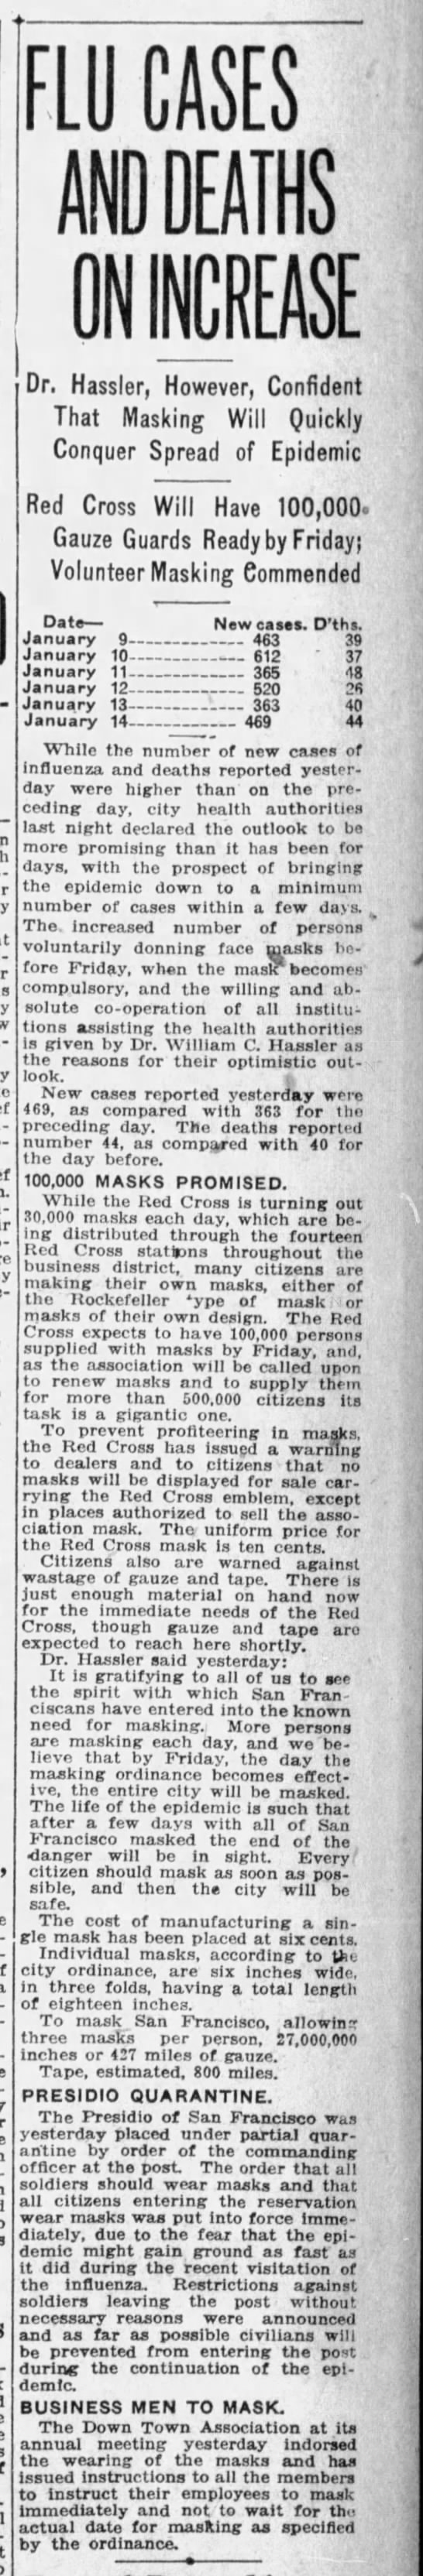 Costs of Masks
San Fran Examiner
15 Jan 1919 - 